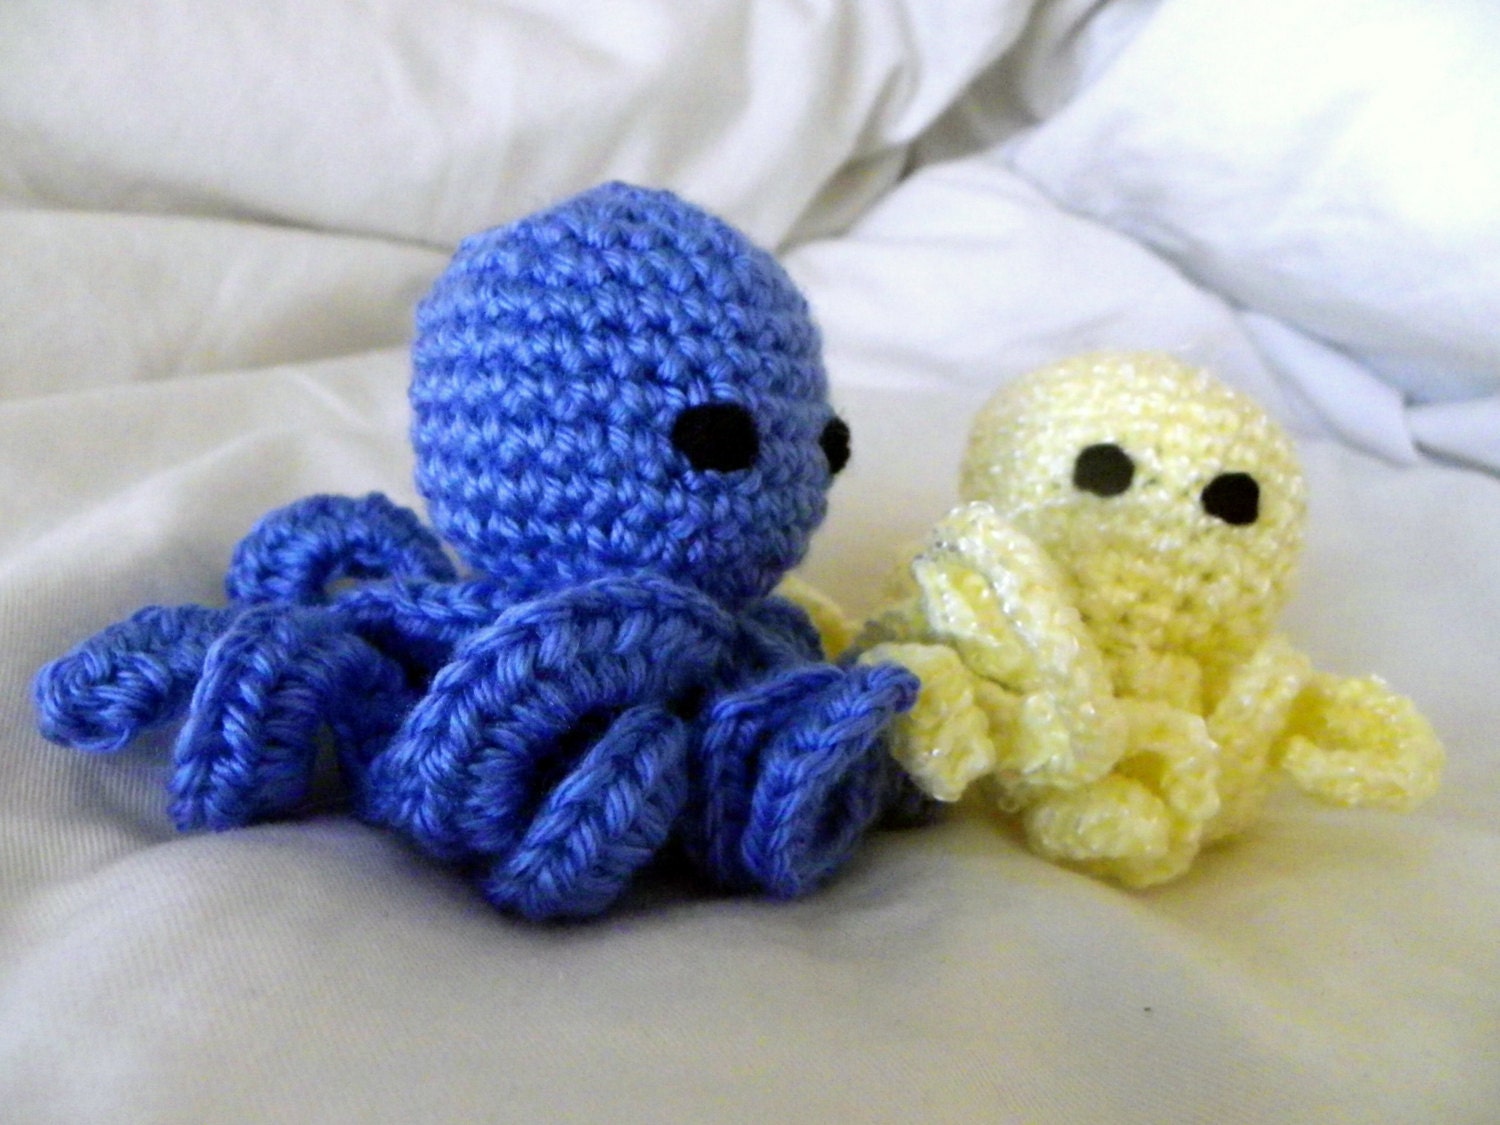 Octopus crochet pattern free